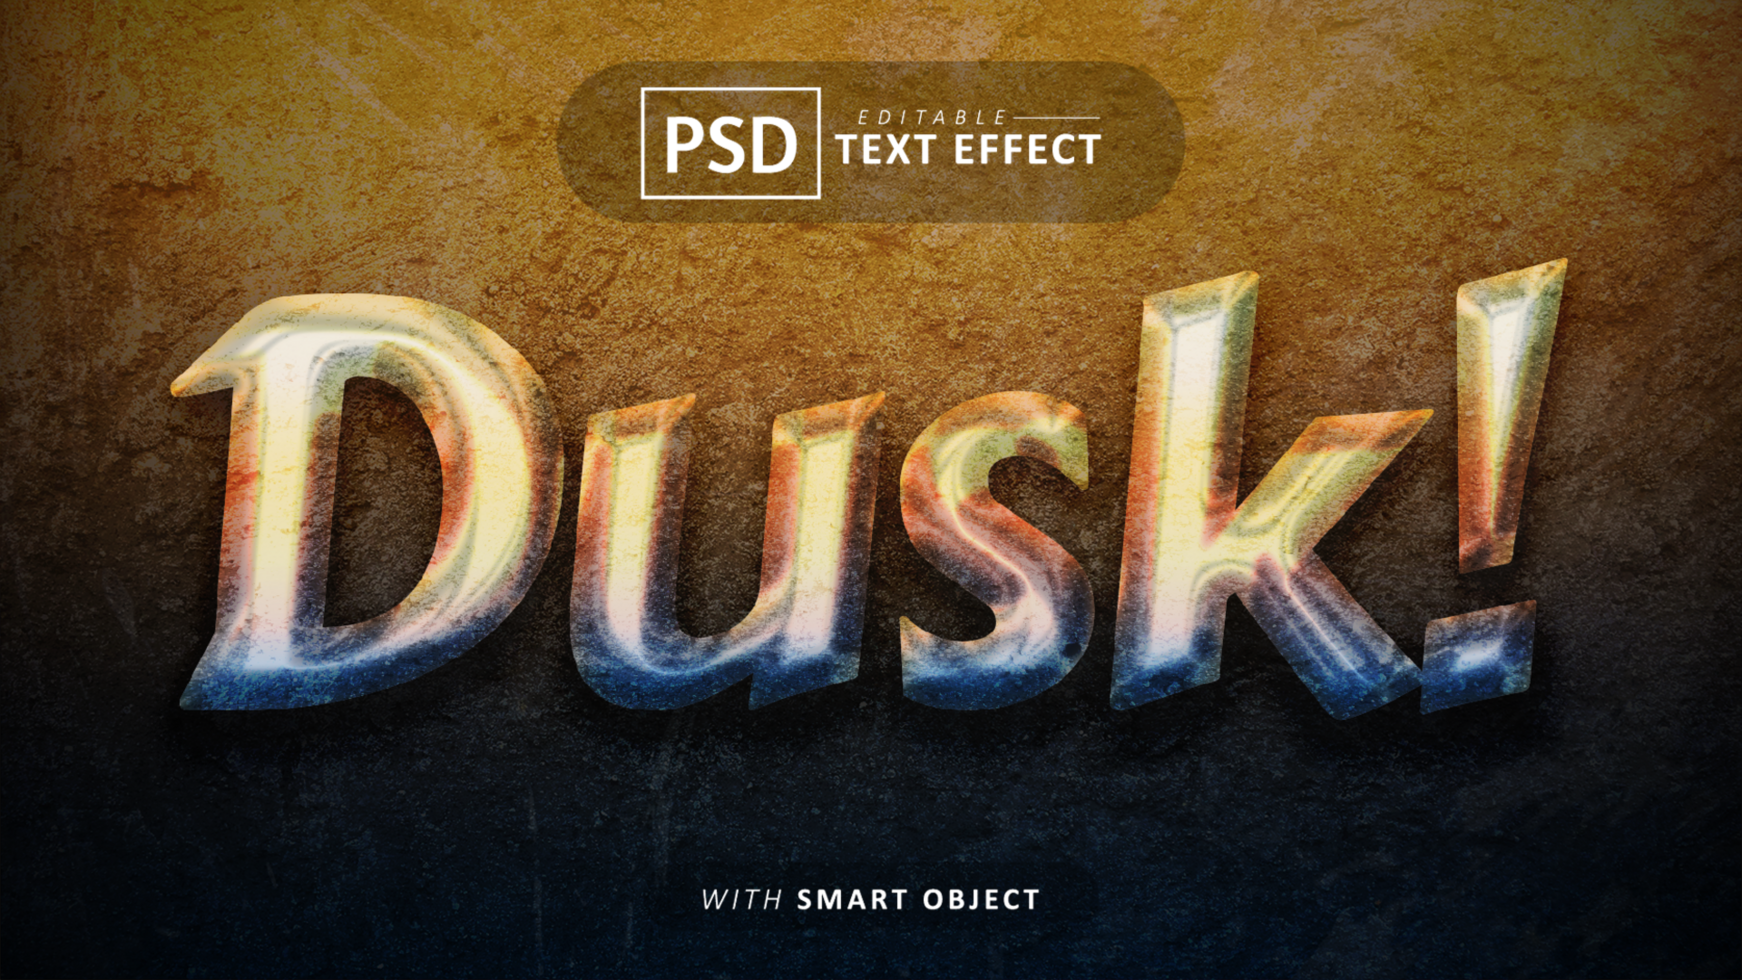 Dusk text effect editable psd